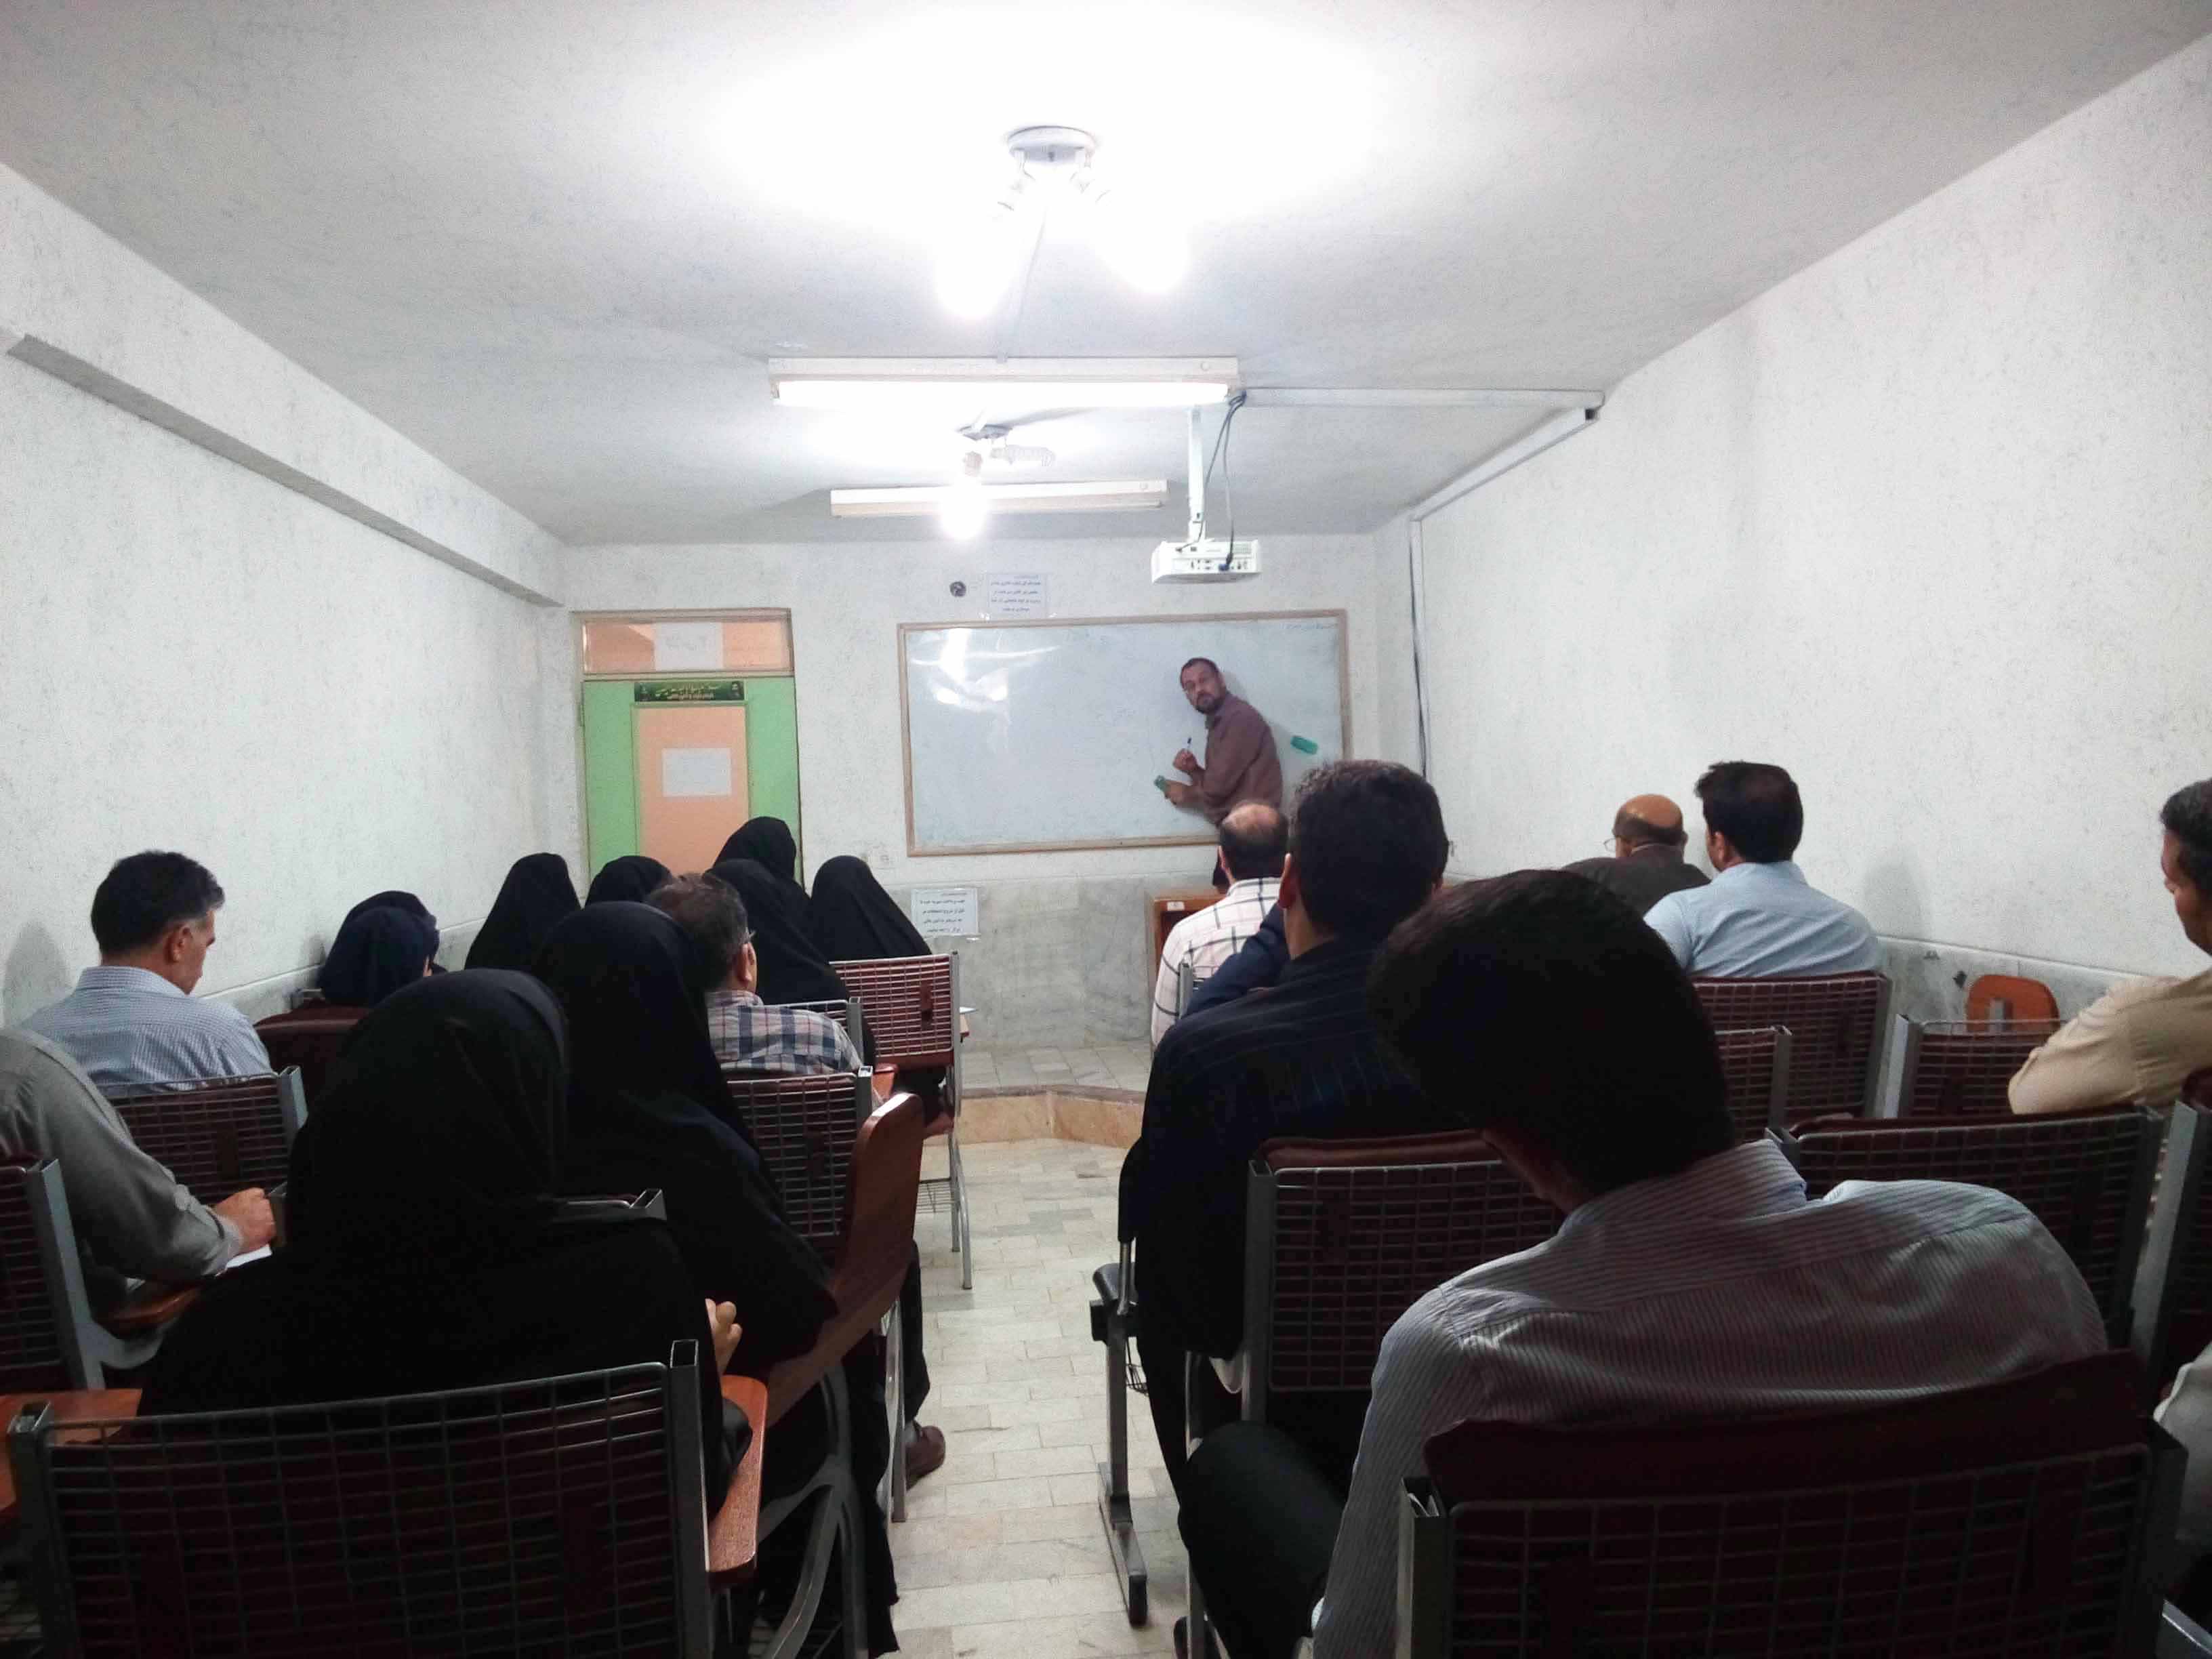 دوره ی آموزشی کمک های اولیه توسط اداره کل پدافند غیر عامل استانداری و با همکاری جمعیت هلال احمر خوزستان برگزار شد